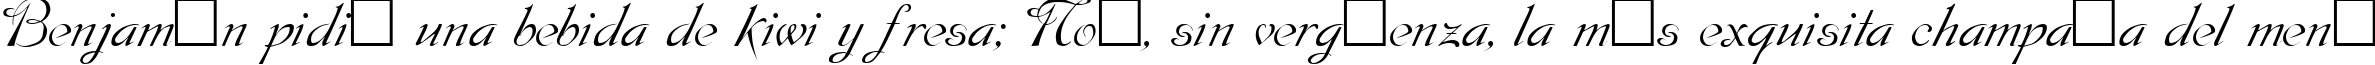 Пример написания шрифтом Dobkin Plain текста на испанском